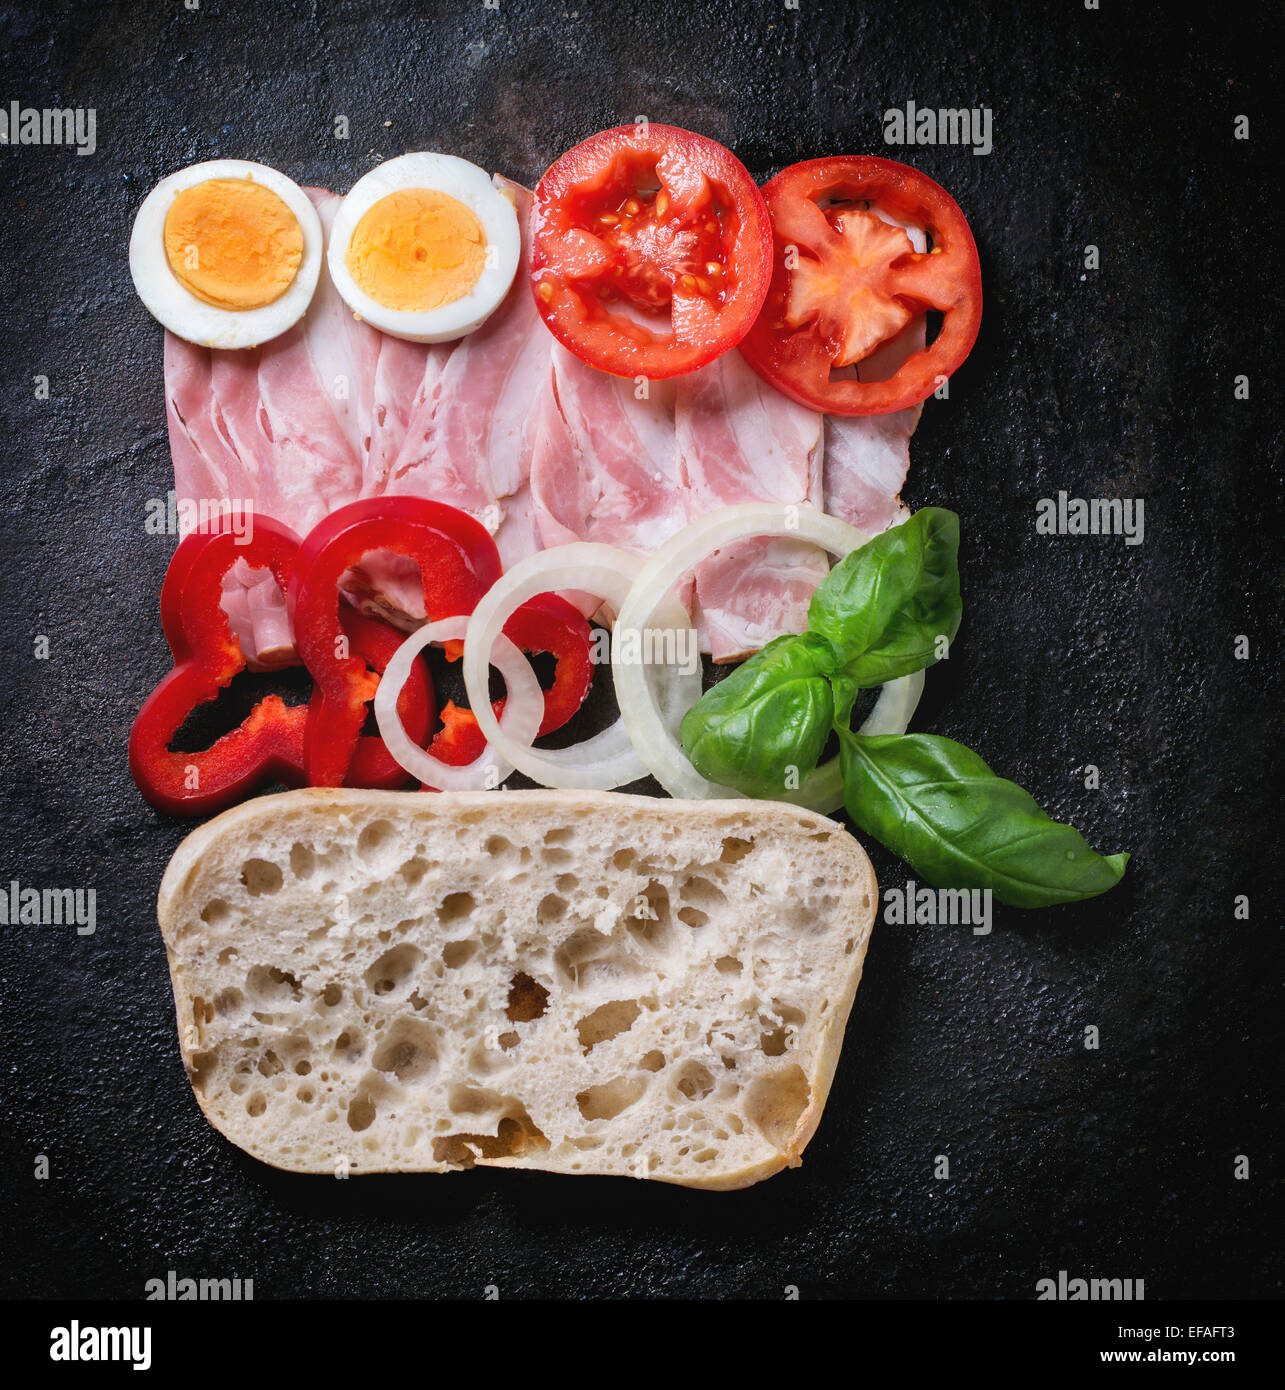 Zutaten für Sandwich mit Schinken, Eiern und Gemüse auf schwarzem Hintergrund. Ansicht von oben Stockfoto